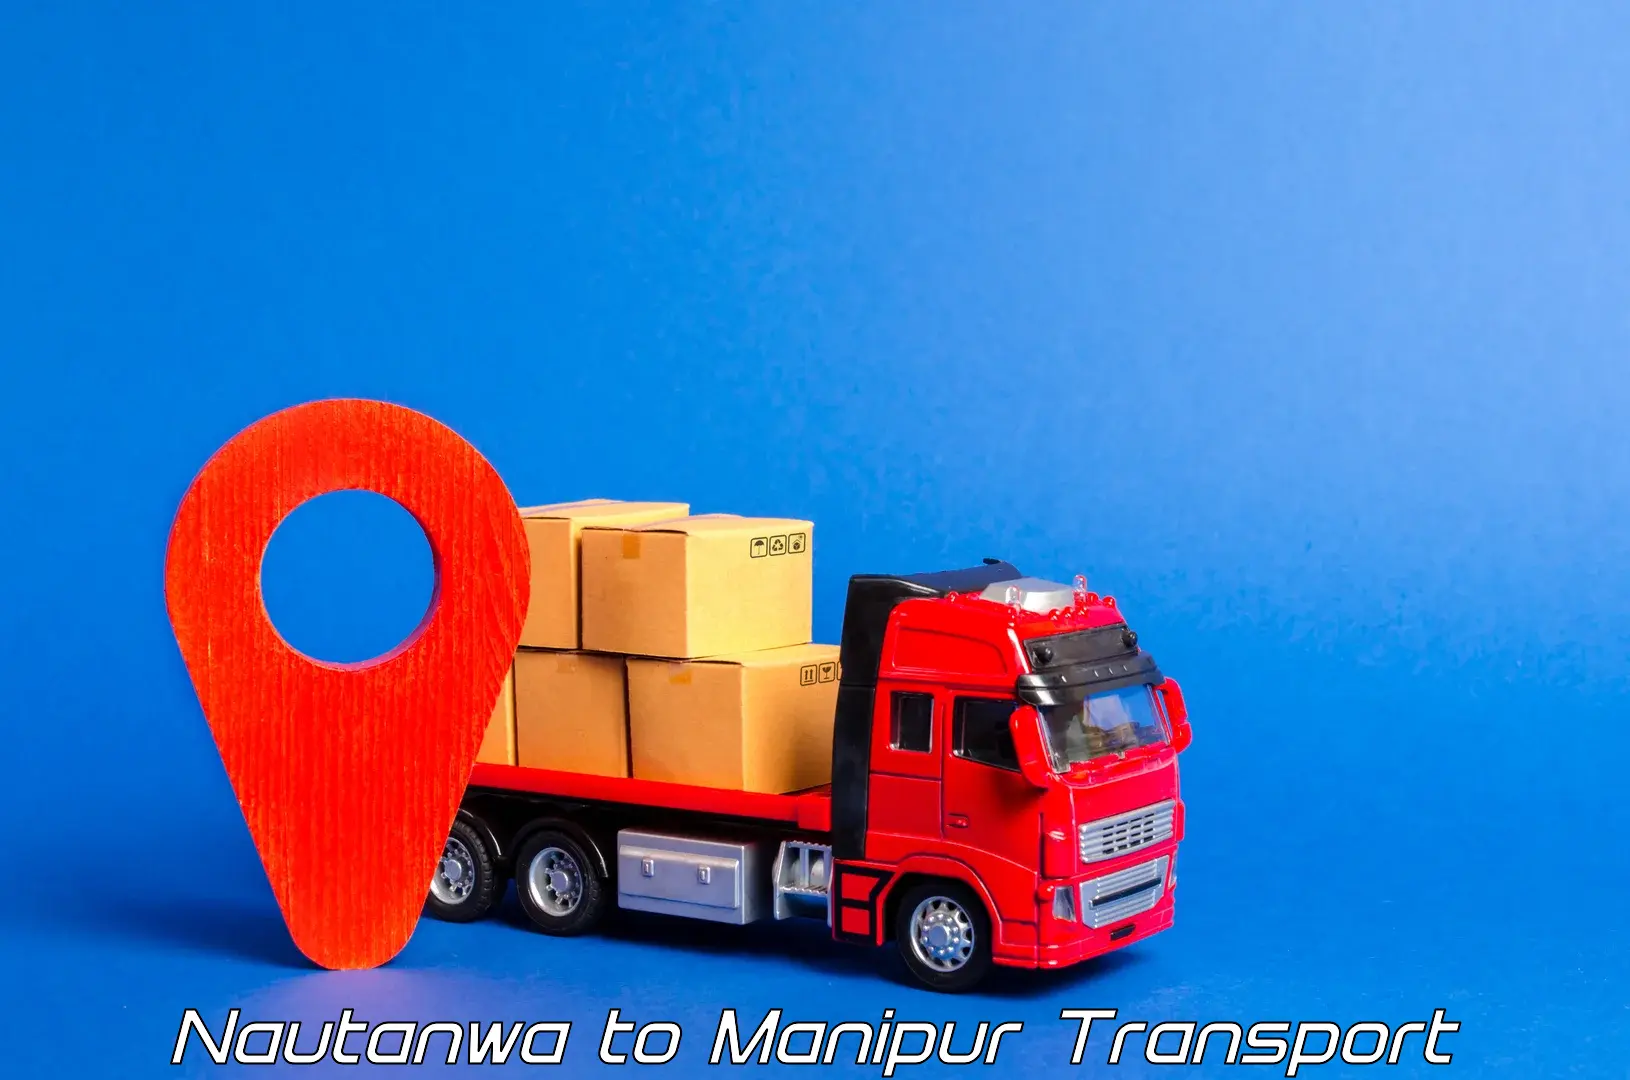 Land transport services Nautanwa to Manipur